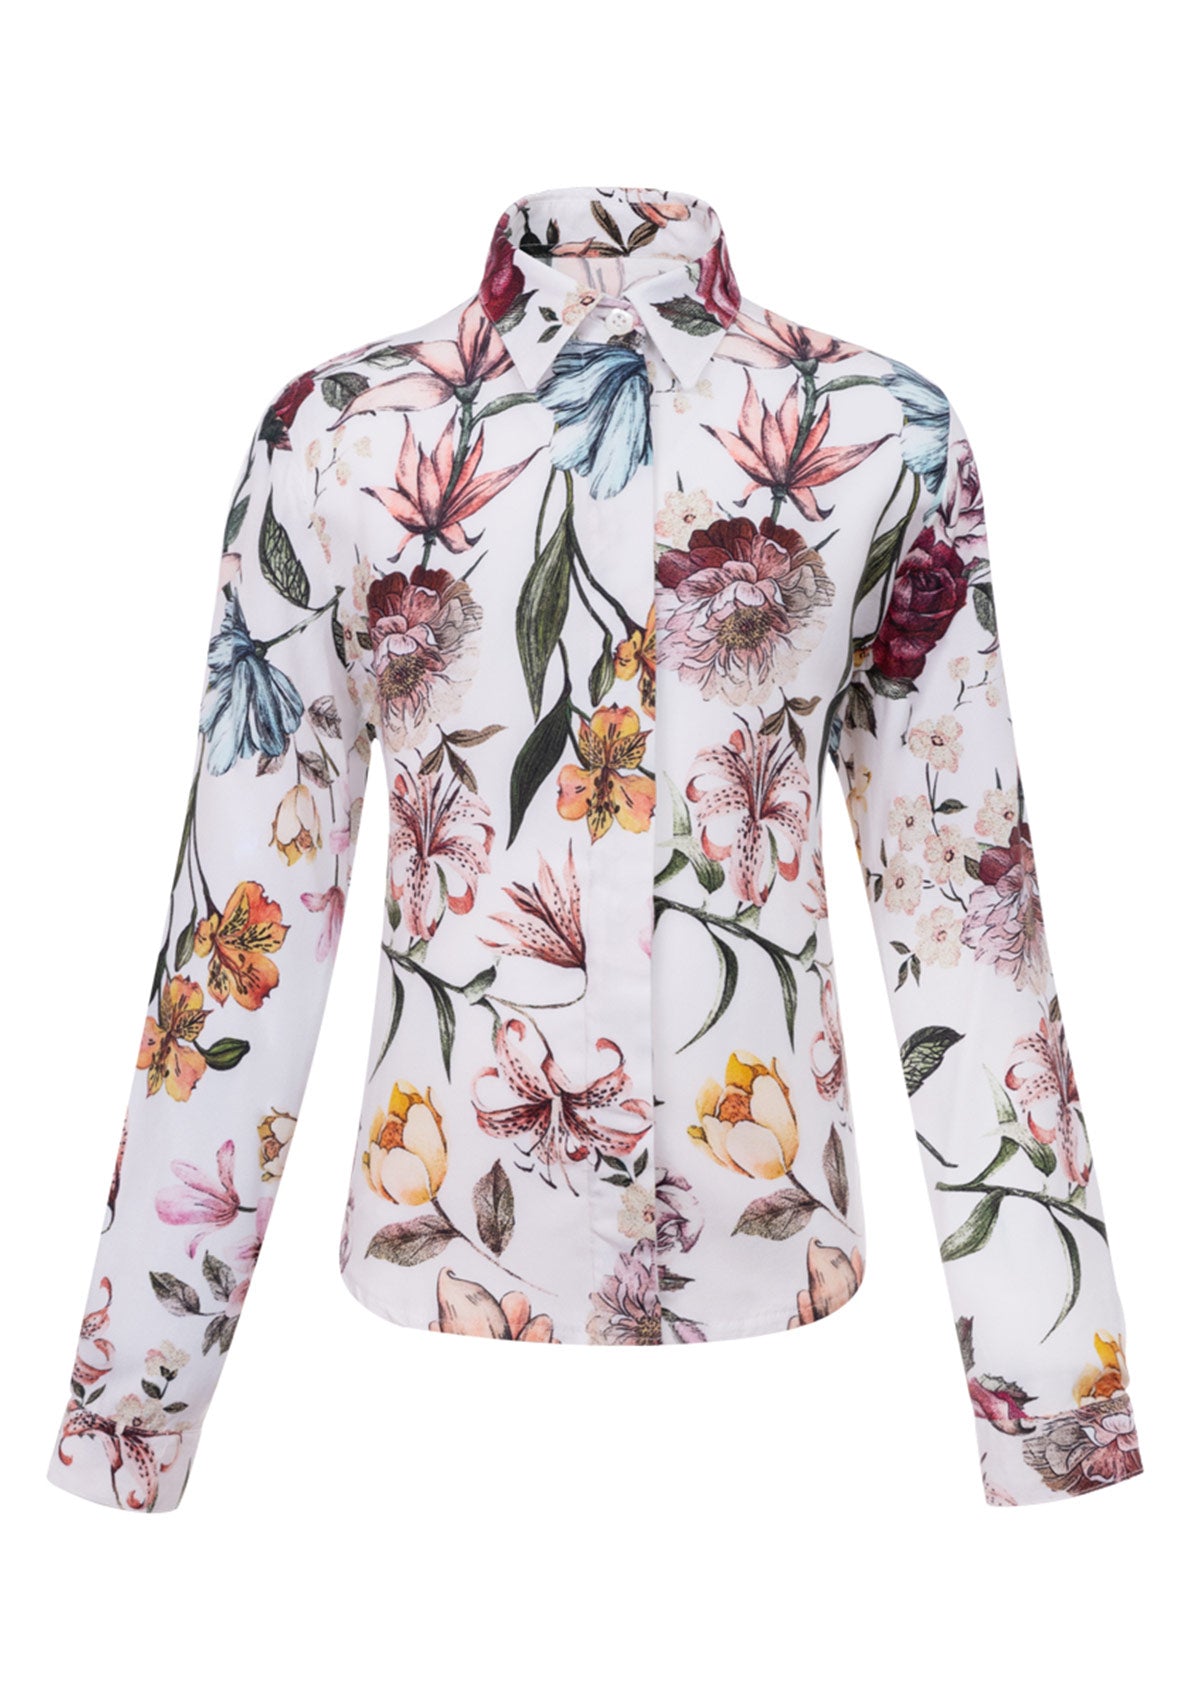 Памучна риза с цветя GARDENIA WOMEN/KID'S флорален десен елегантна дамска риза